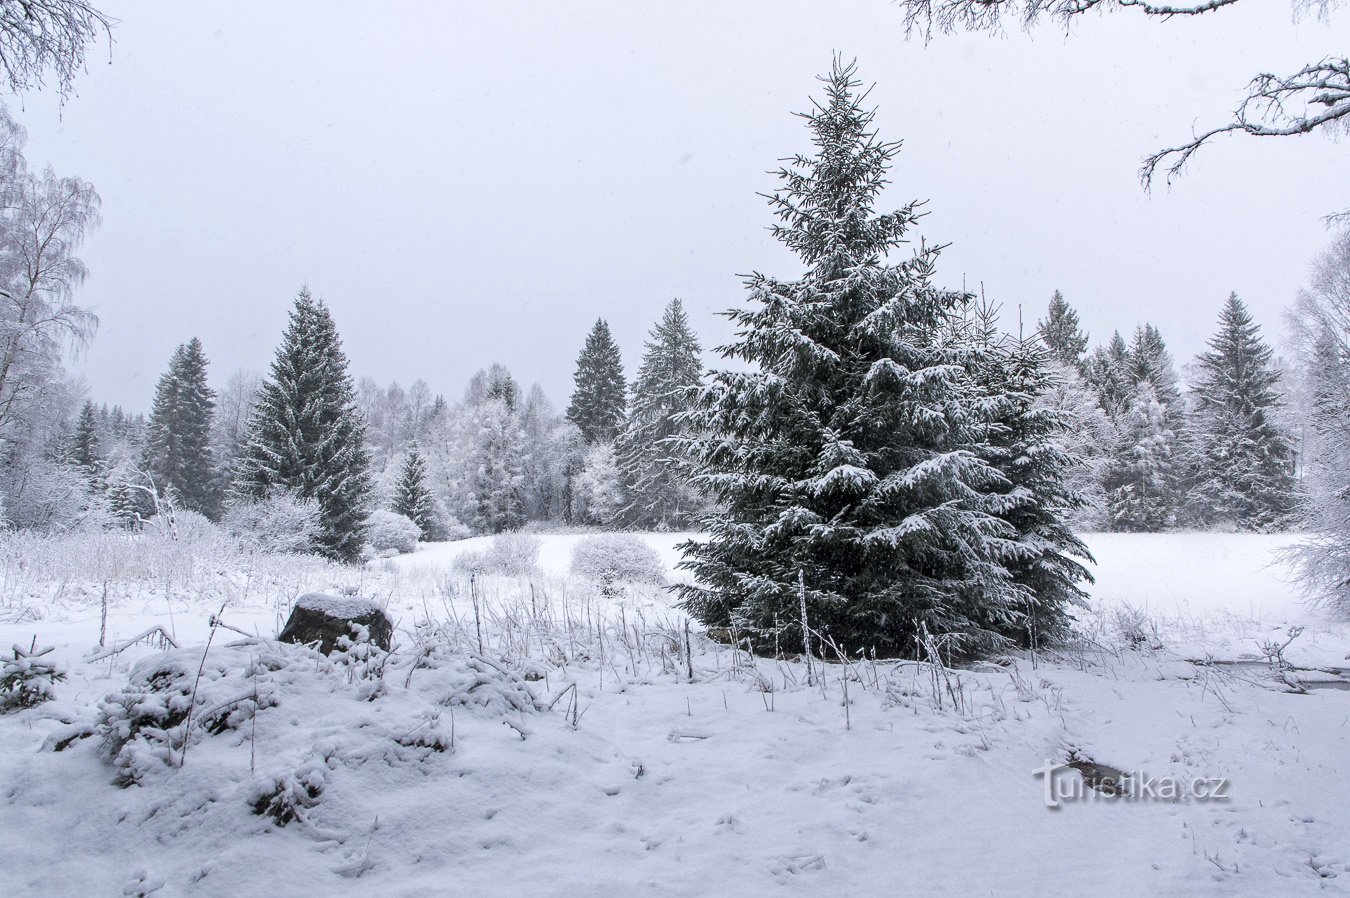 Winterwoche im Böhmerwald – Februar 2020 pt. 2